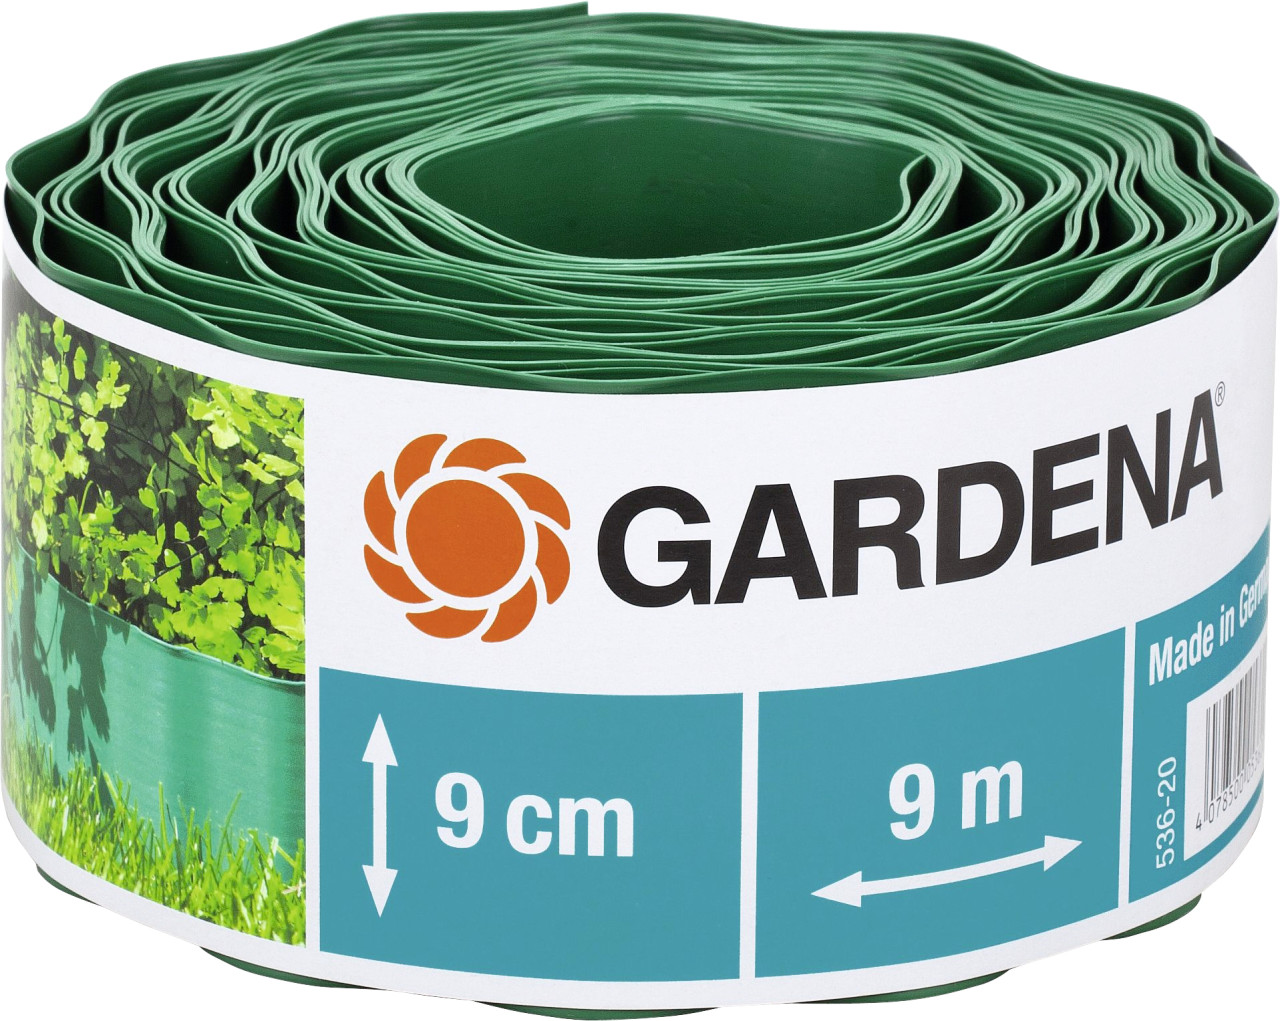 Gardena Beeteinfassung grün 9 m x 9 cm von Gardena